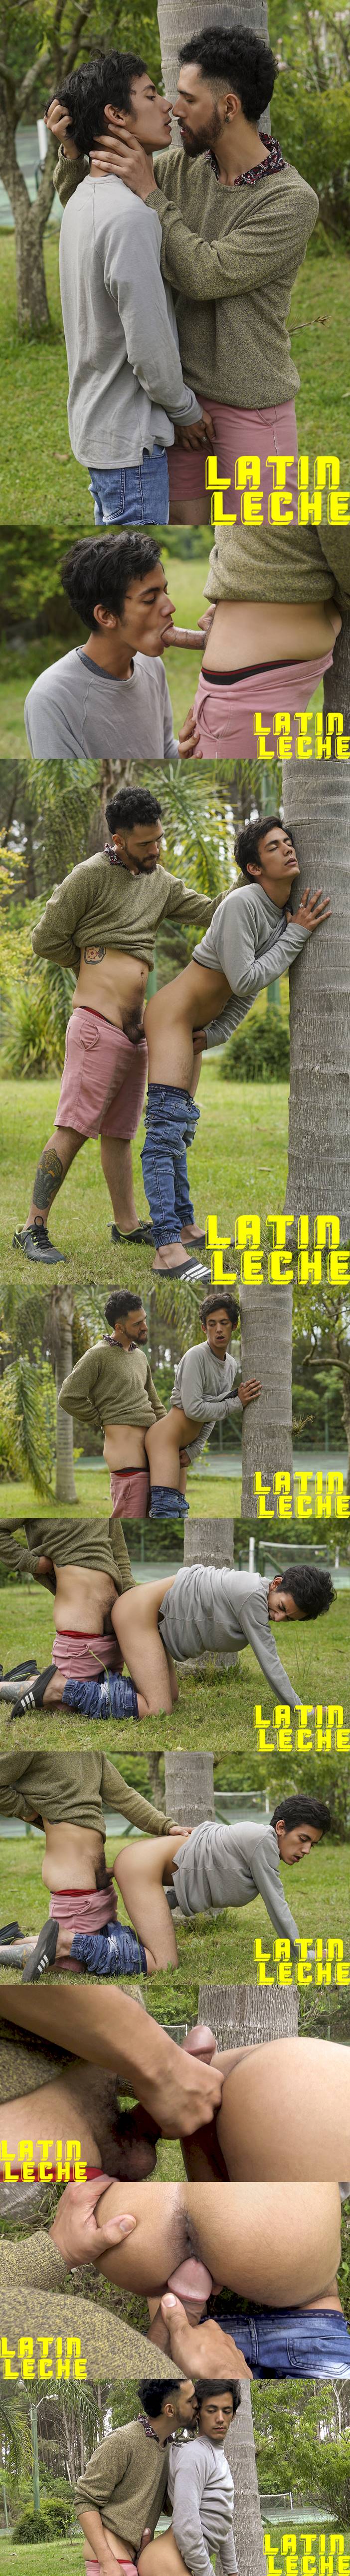 Latin Leche: Numero 78